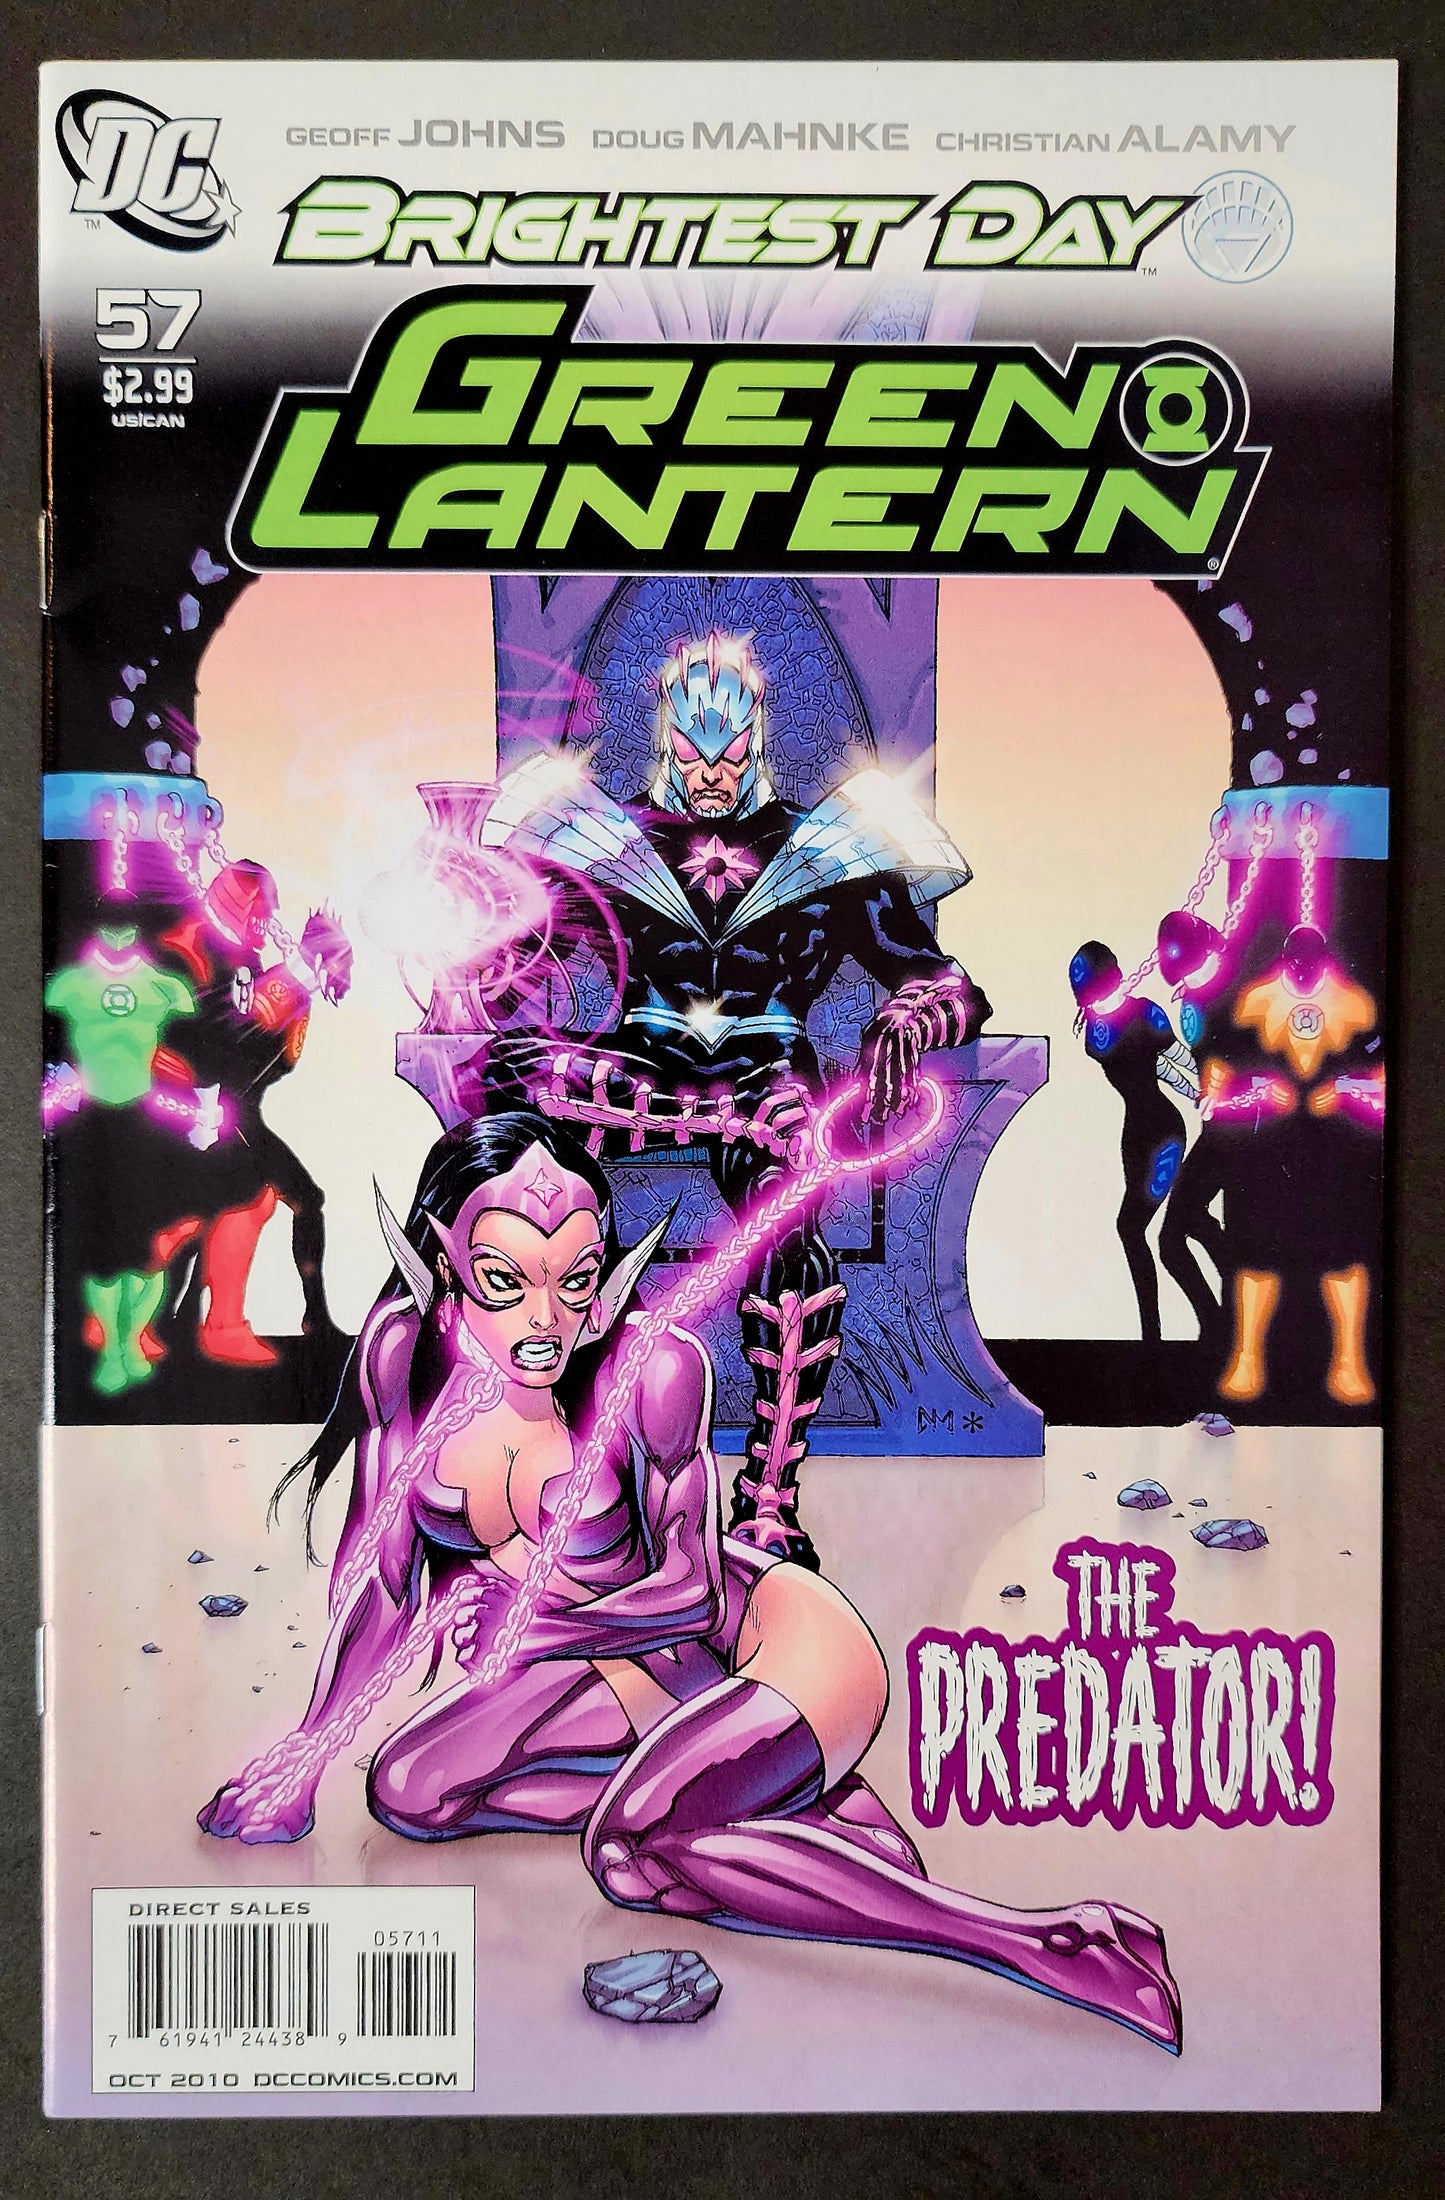 Green Lantern (Vol. 4) #57 (VF)